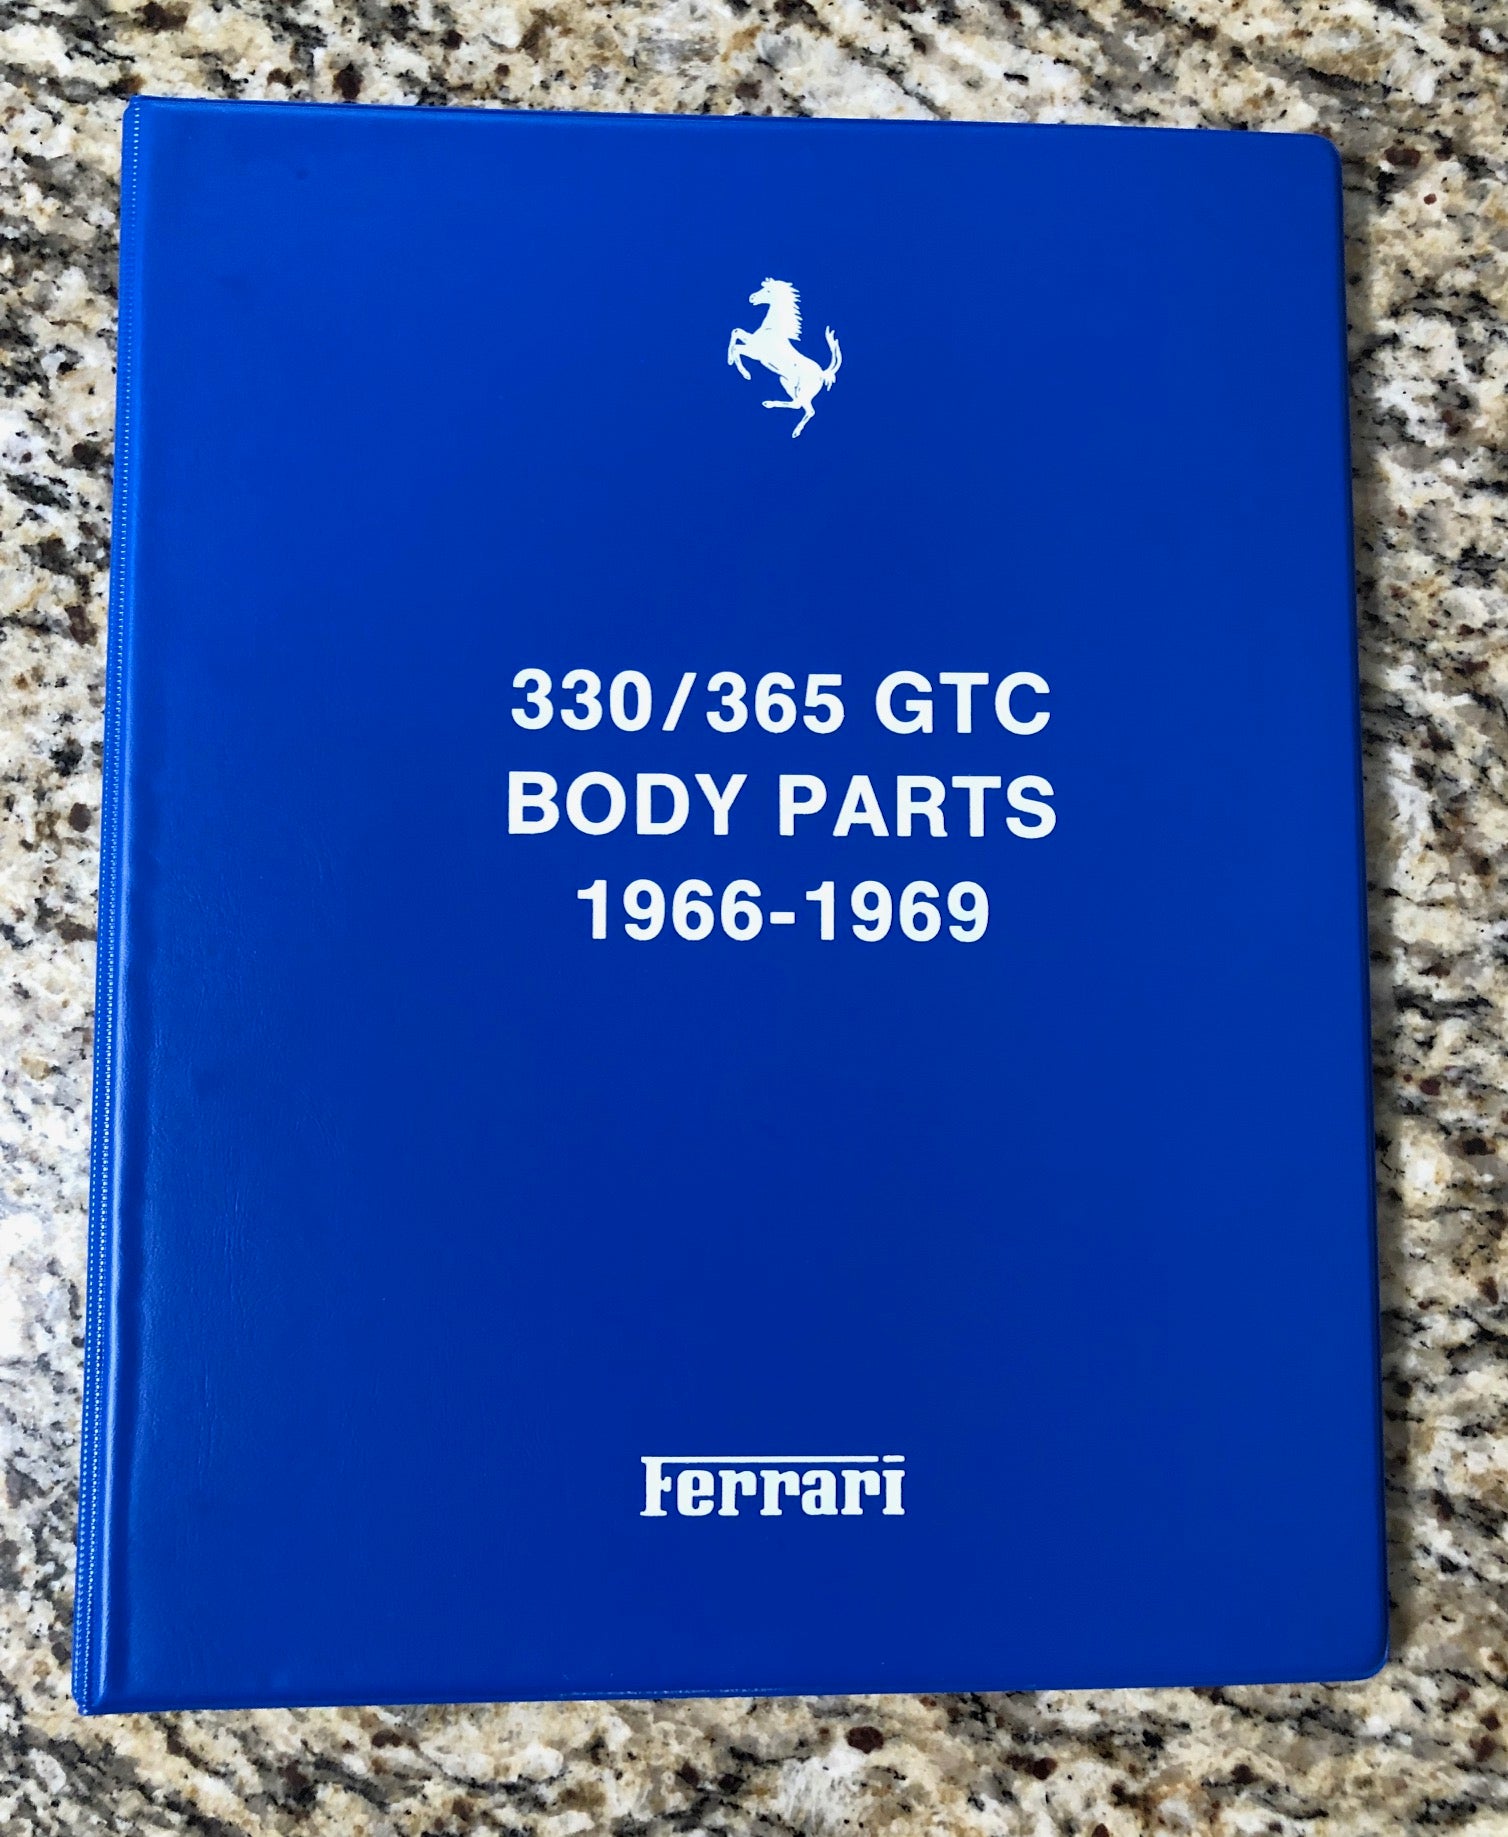 Ferrari 330/365 GTC Body Parts Catalogue 1966-69